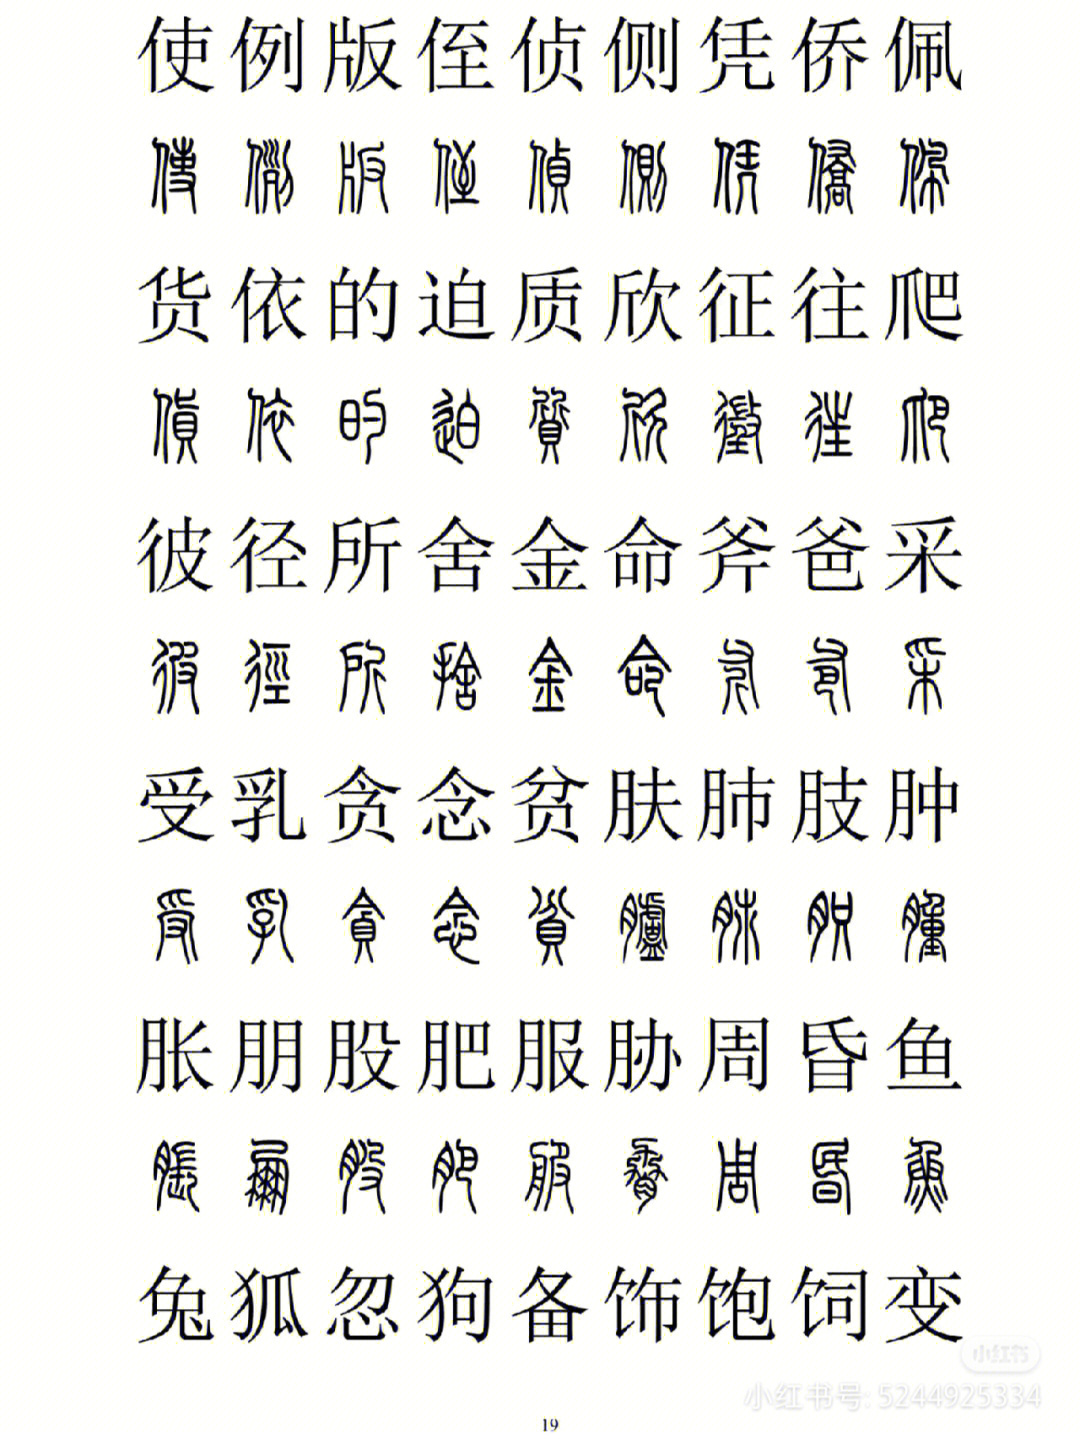 彝文与汉字对照表图片